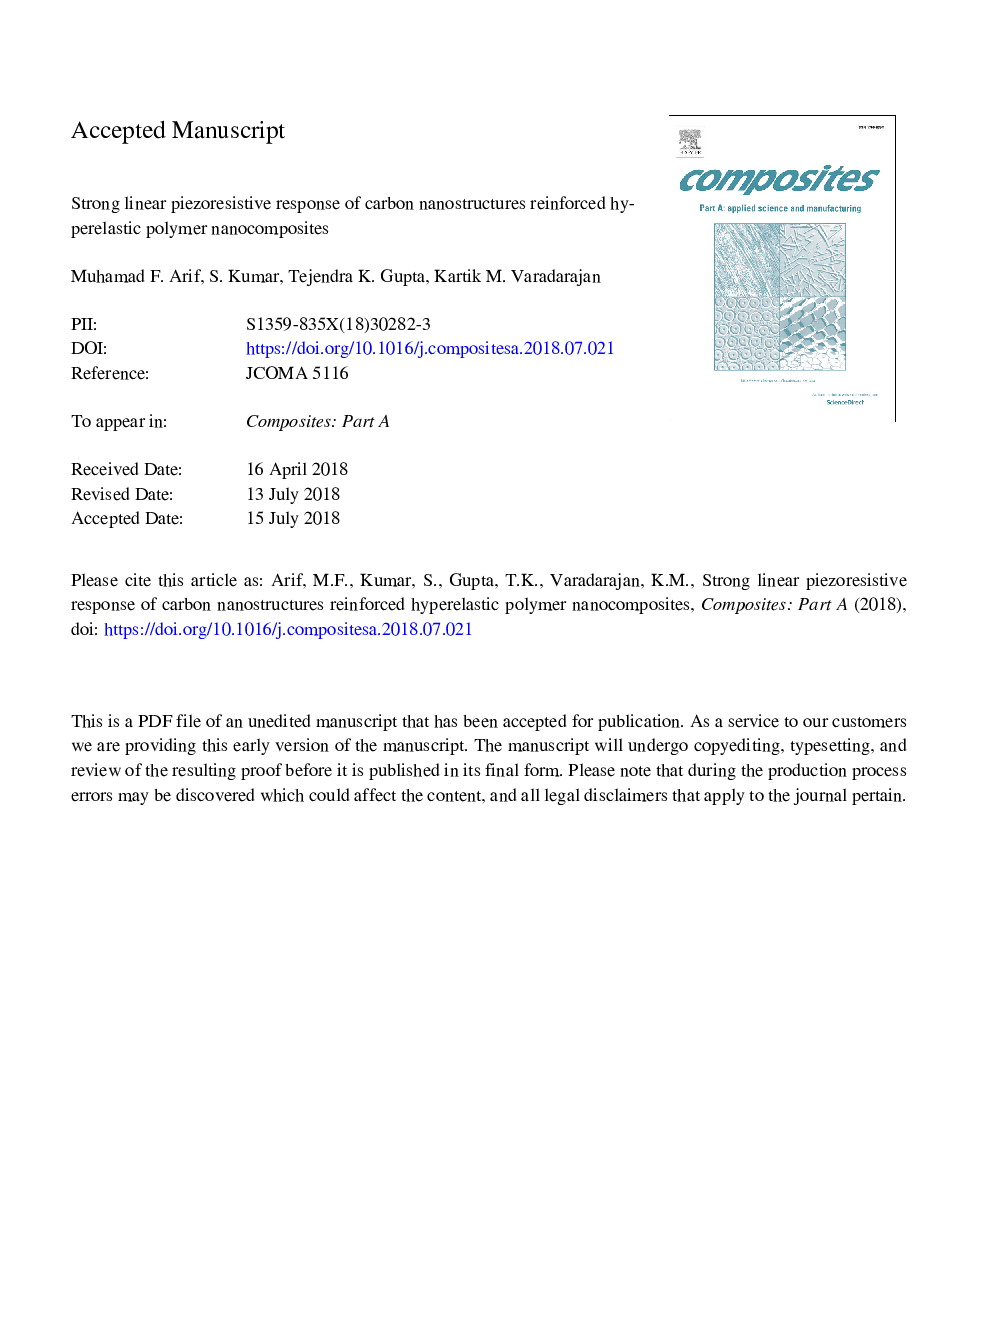 نانوکامپوزیت های پلیمری پلی اورتان تقویت شده از نانوکامپوزیت های کربنی مقاوم به خطی-پیزوآرزسیونی قوی برخوردار است 